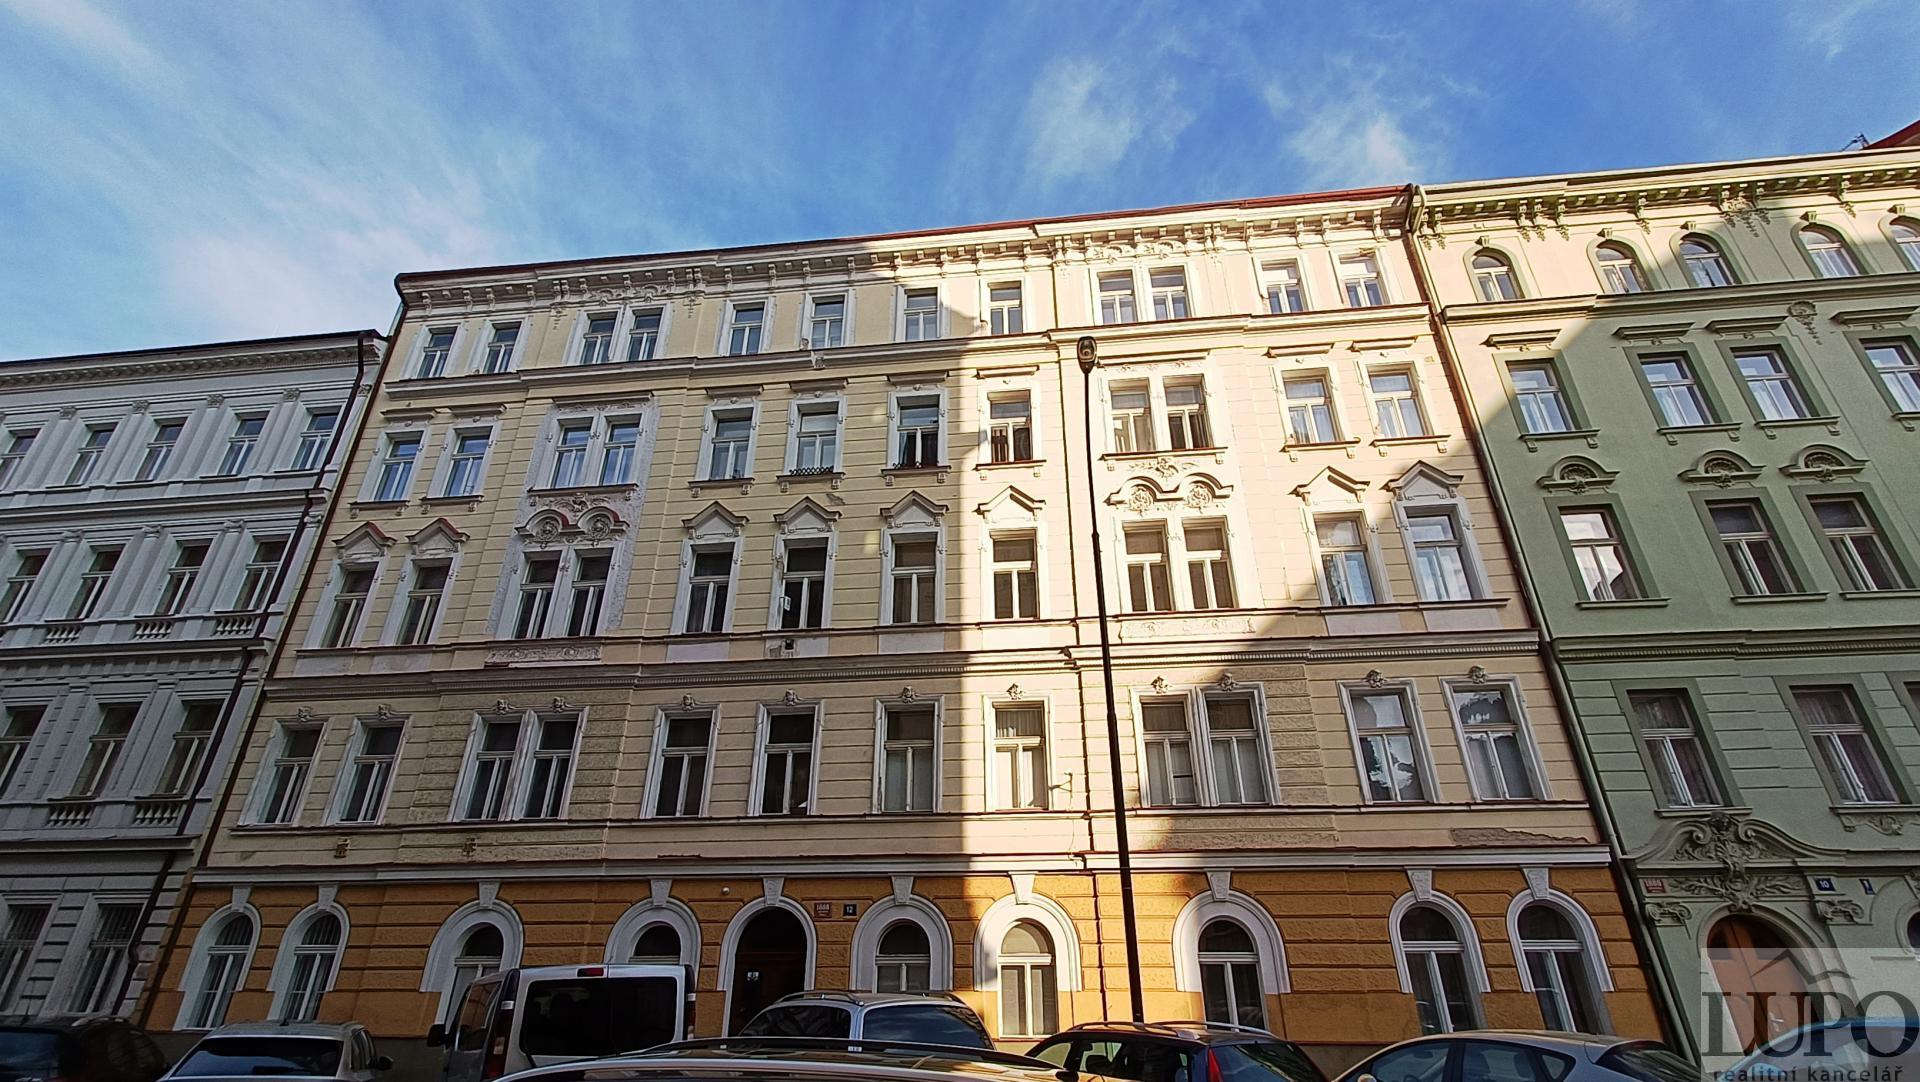 Krásný světlý byt 2+kk, 52m2, OV, po kompletní rekonstrukci, Praha 2, ul. Pod Slovany.